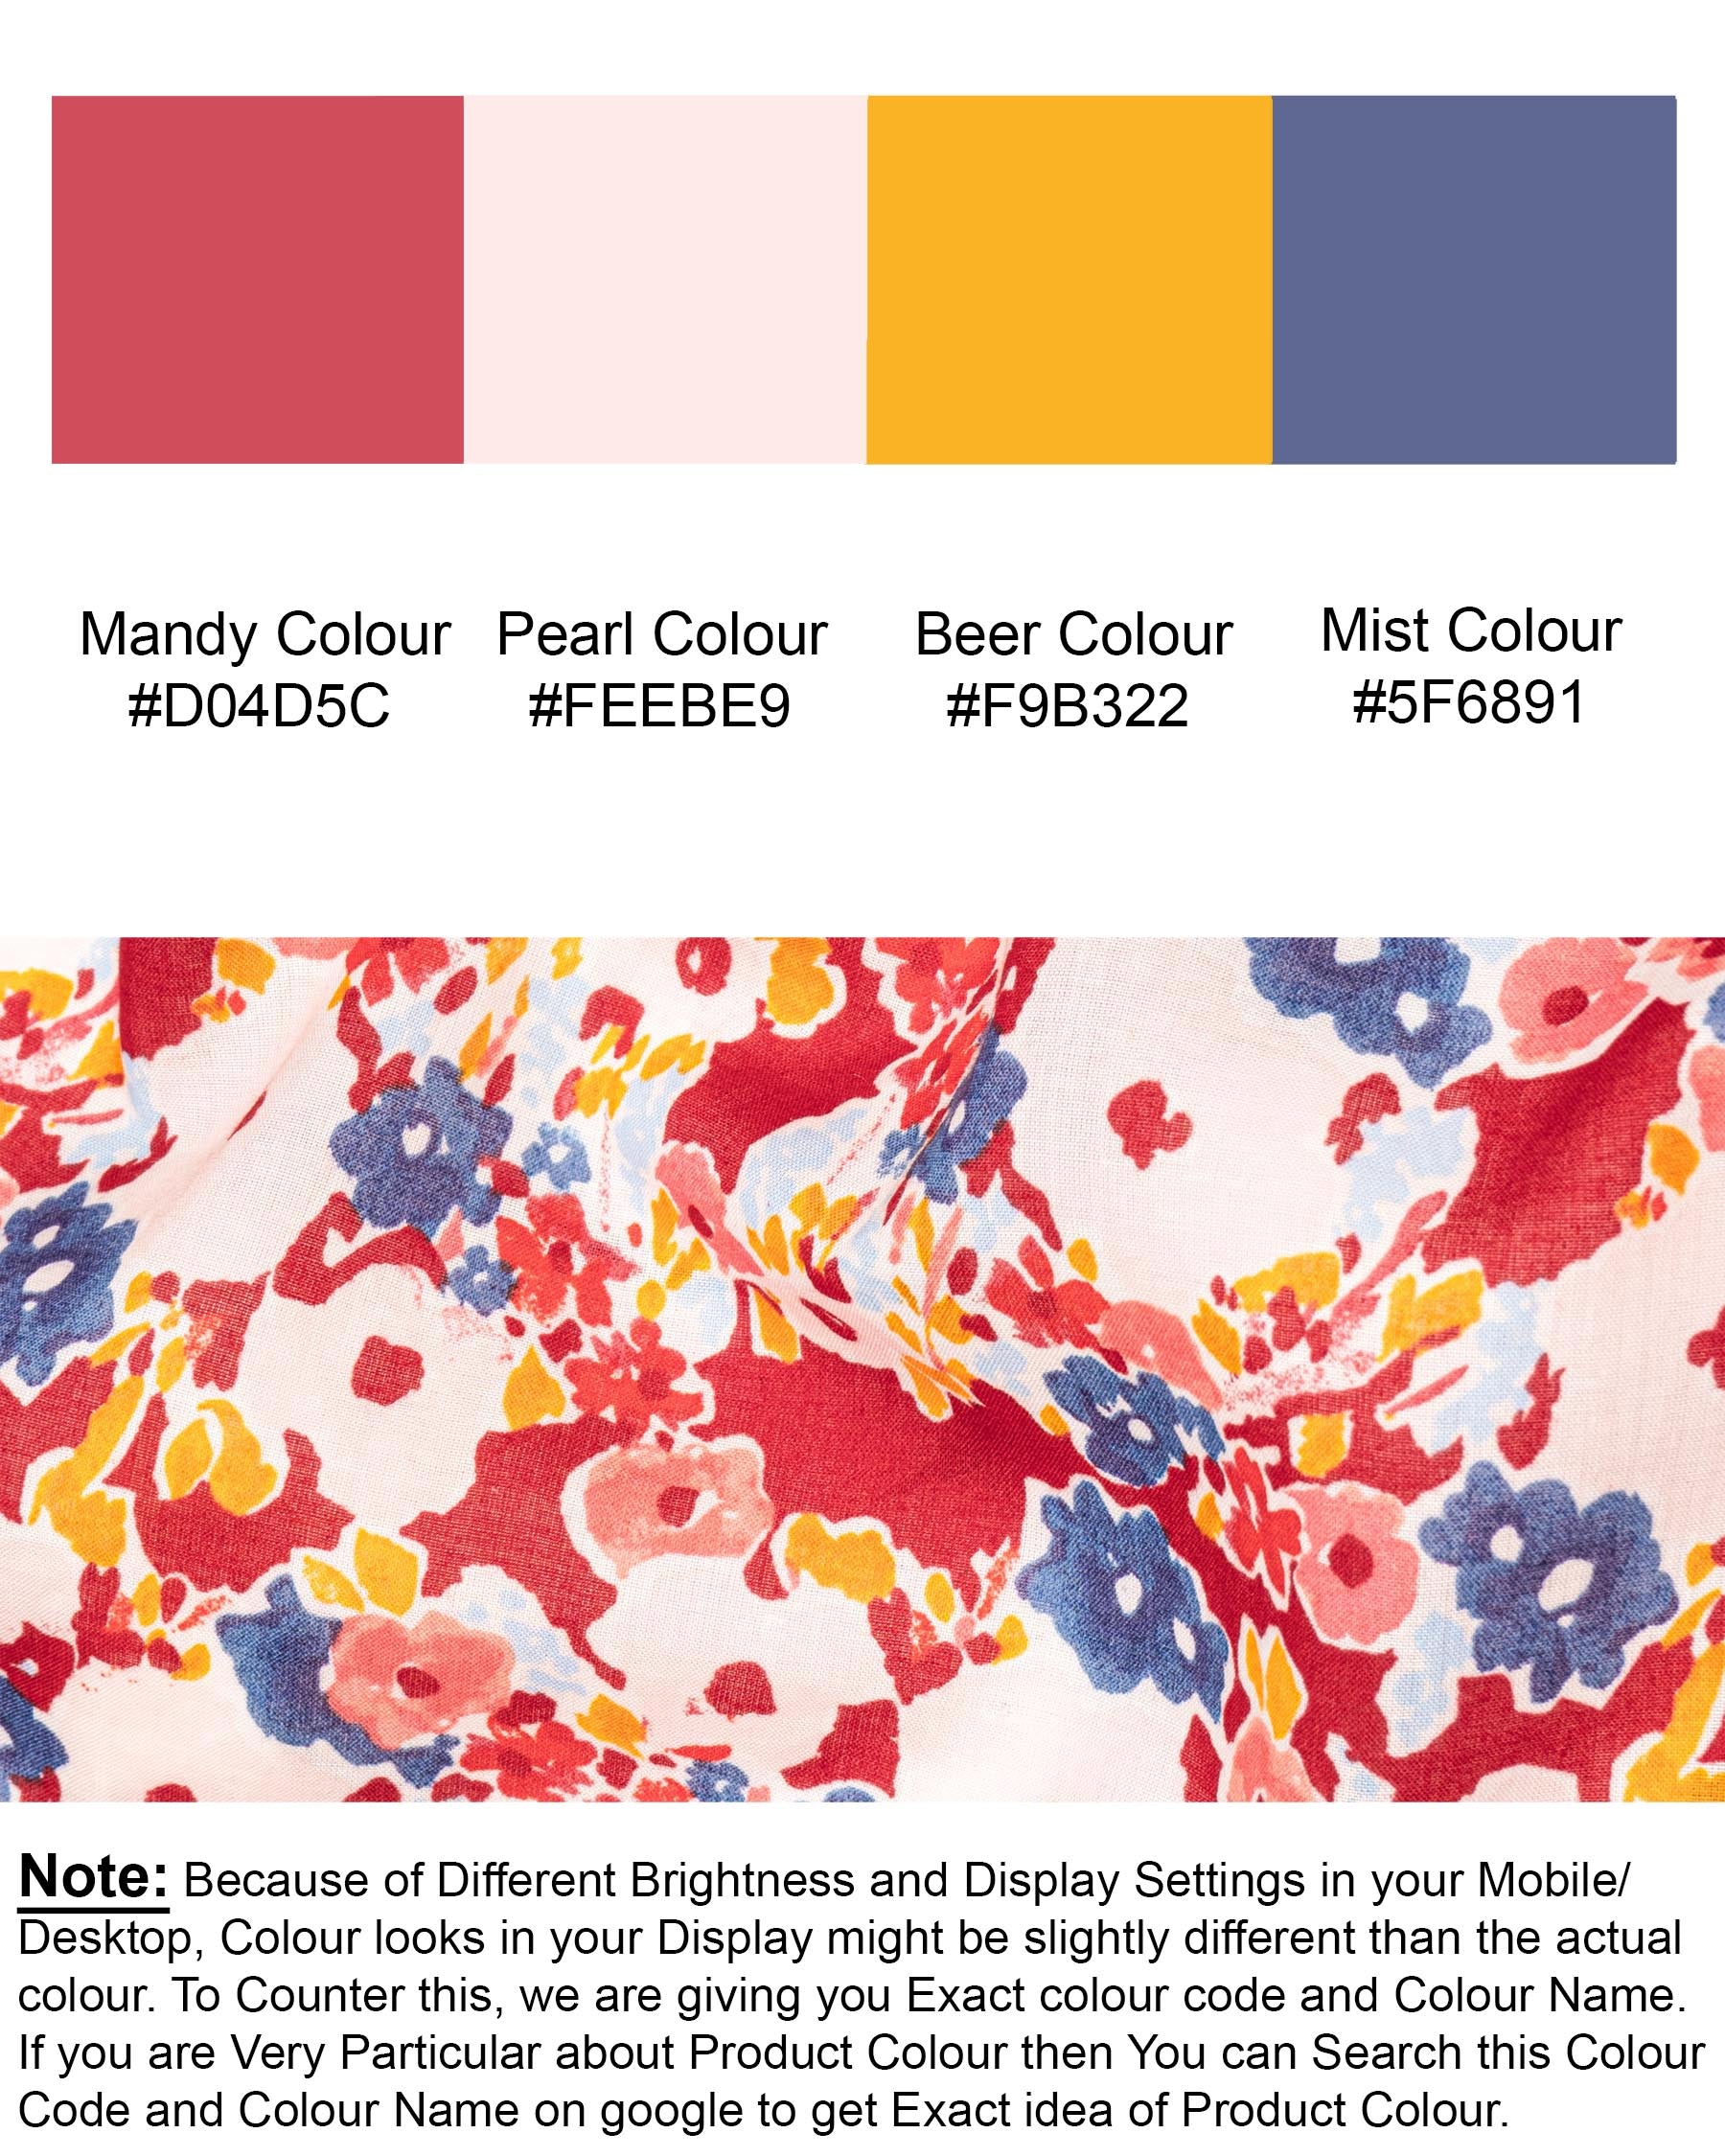 Mandy Red with Pearl Multicolour Floral Printed Premium Cotton Kurta Shirt 7015-KS-38, 7015-KS-H-38, 7015-KS-39, 7015-KS-H-39, 7015-KS-40, 7015-KS-H-40, 7015-KS-42, 7015-KS-H-42, 7015-KS-44, 7015-KS-H-44, 7015-KS-46, 7015-KS-H-46, 7015-KS-48, 7015-KS-H-48, 7015-KS-50, 7015-KS-H-50, 7015-KS-52, 7015-KS-H-52